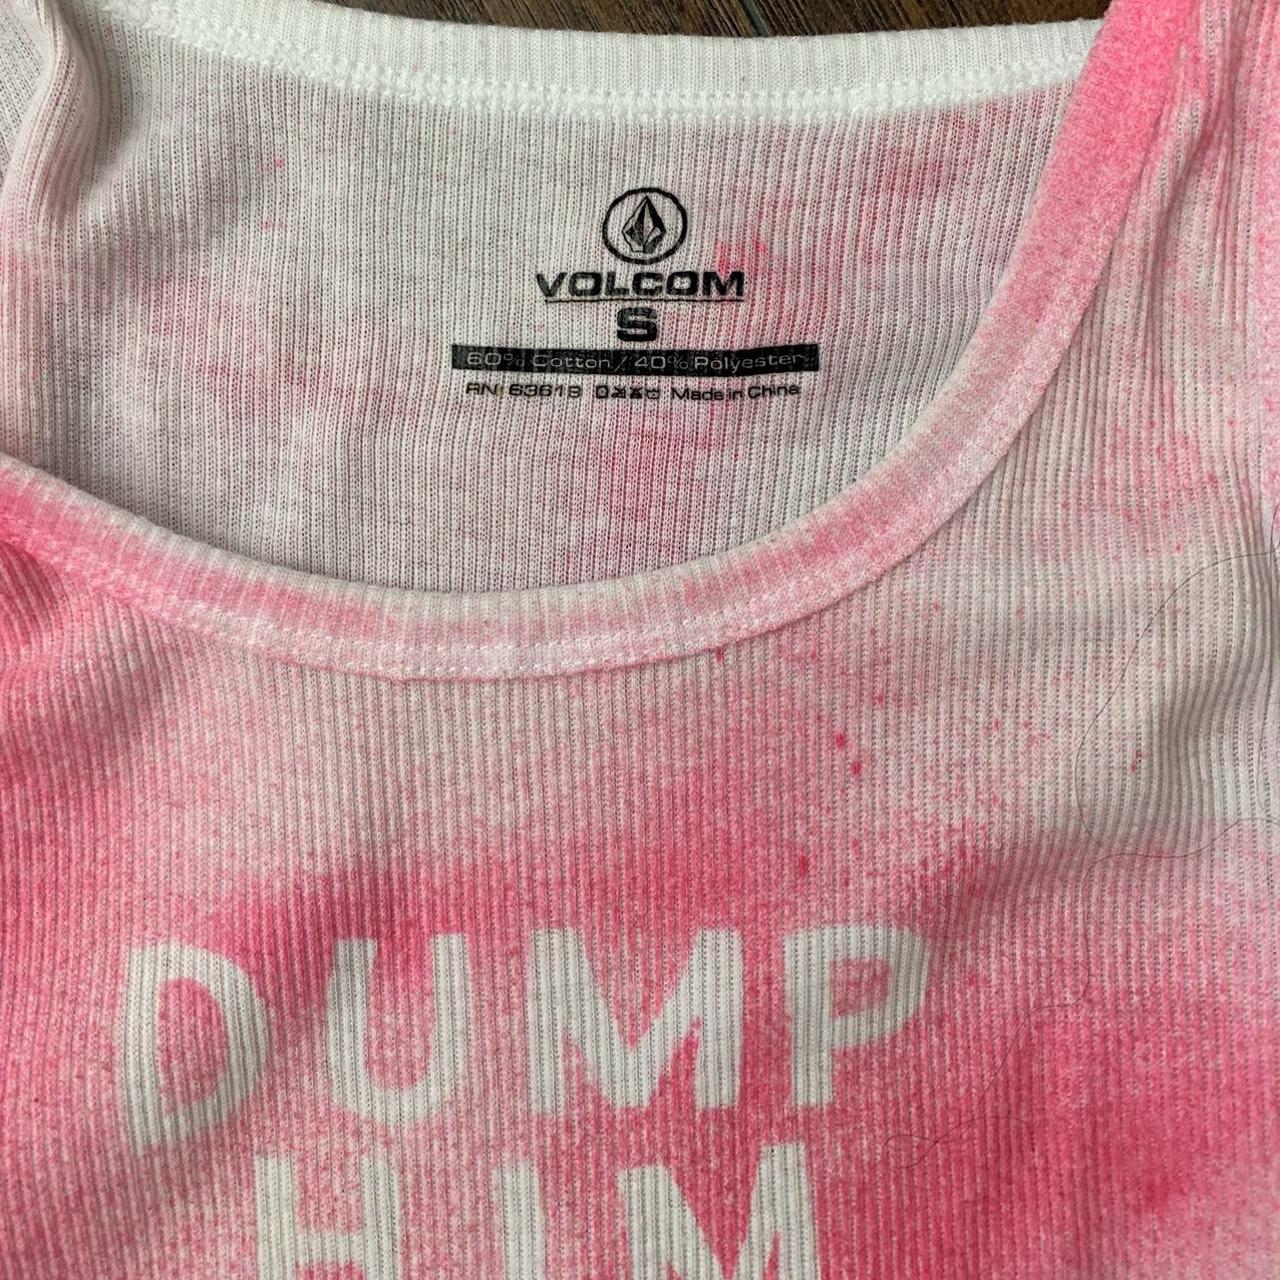 Volcom Women's Pink Vest | Depop